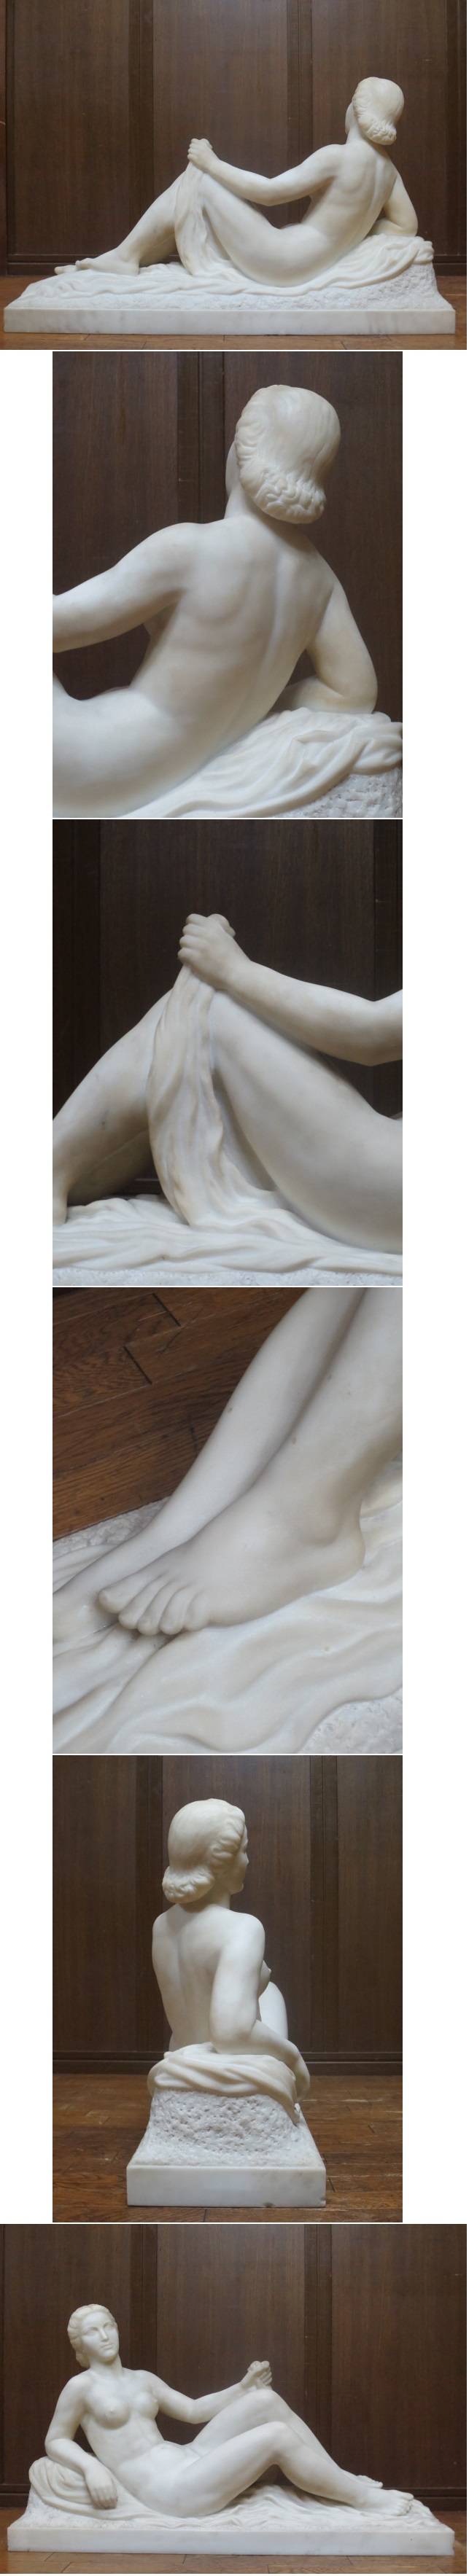 逸品 西洋美術 L.GIBERT 大理石 彫刻 裸婦像 サイン入り 幅84㎝ 高さ49㎝ 重さ75㎏ 裸婦 美人像 女性像 資産家収蔵品 －日本代購代Bid第一推介「Funbid」